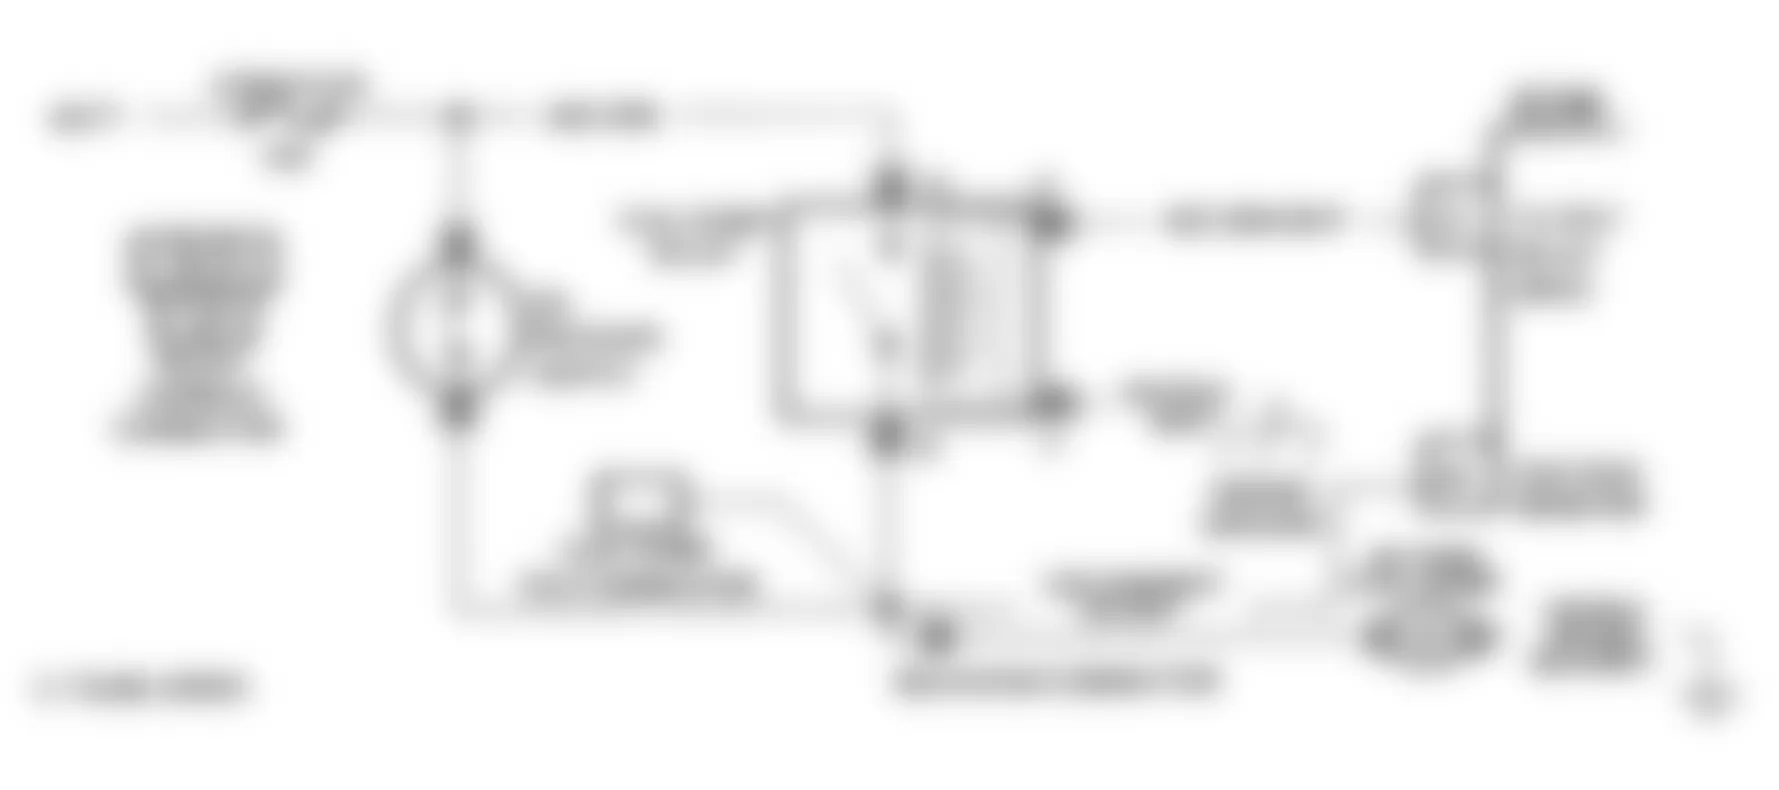 GMC Sonoma 1991 - Component Locations -  Code 54 Schematic (Astro, Safari) Fuel Pump Circuit